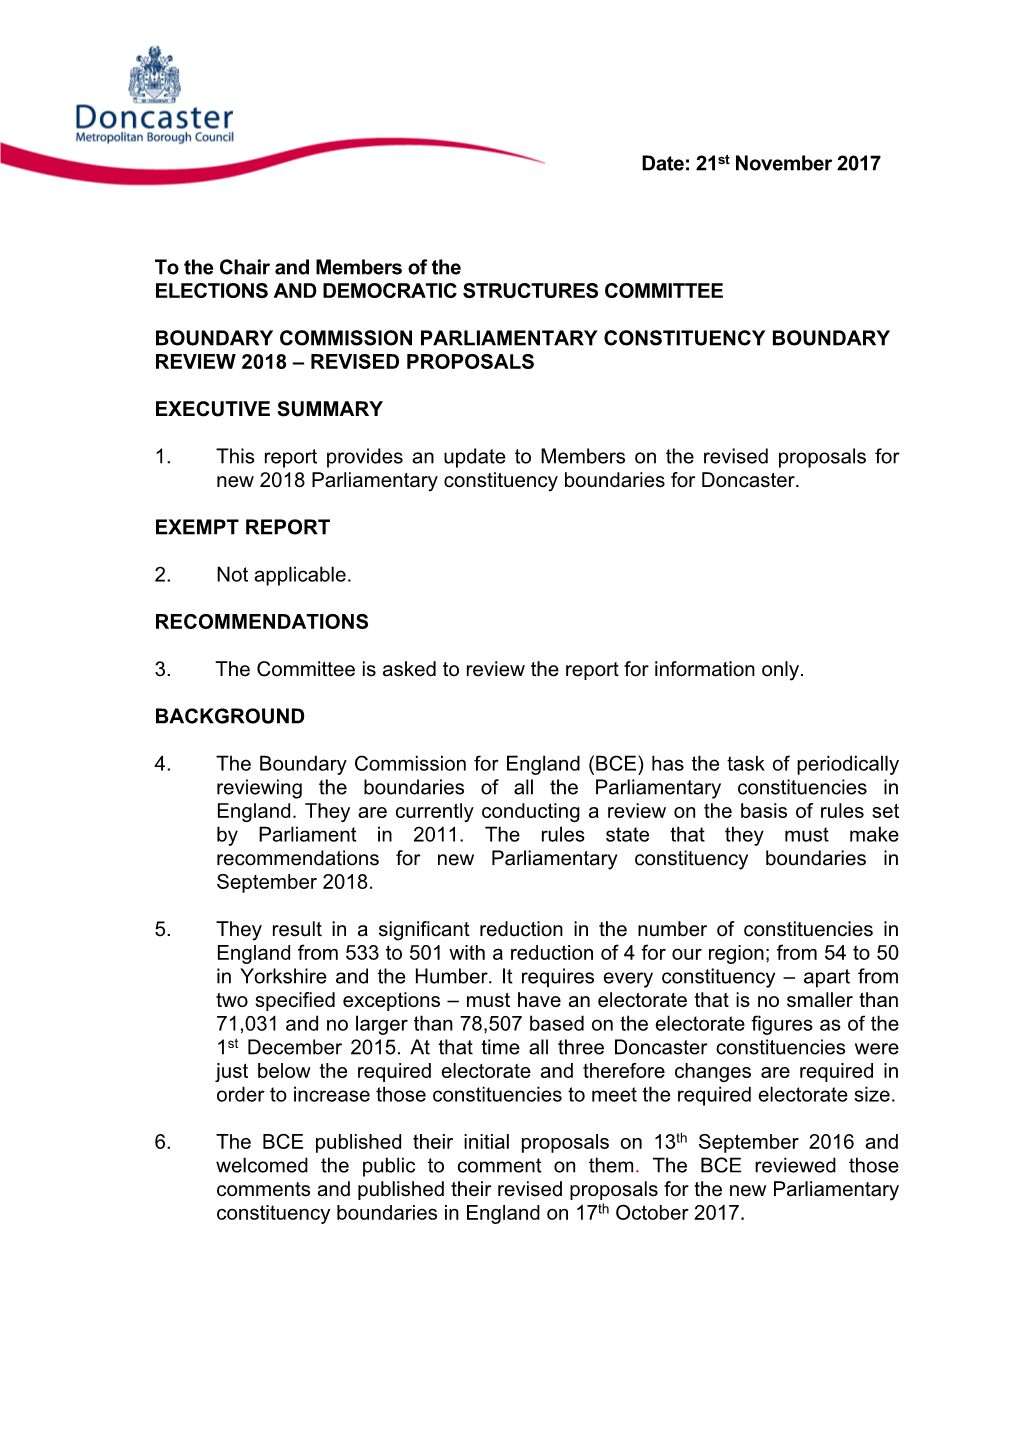 Revised Proposals PDF 167 KB